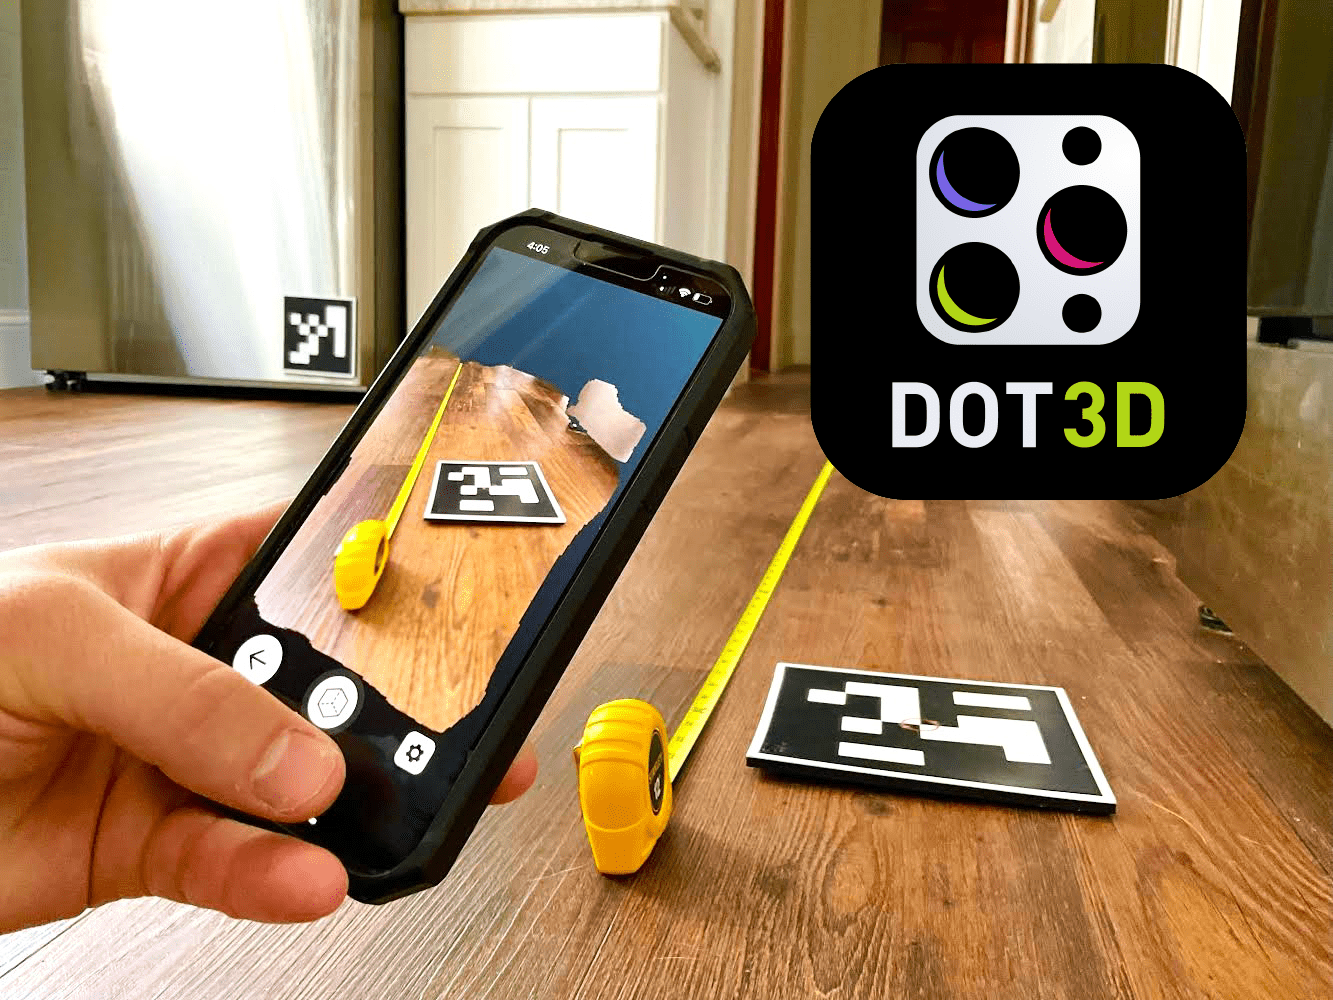 Dot3D for iOS